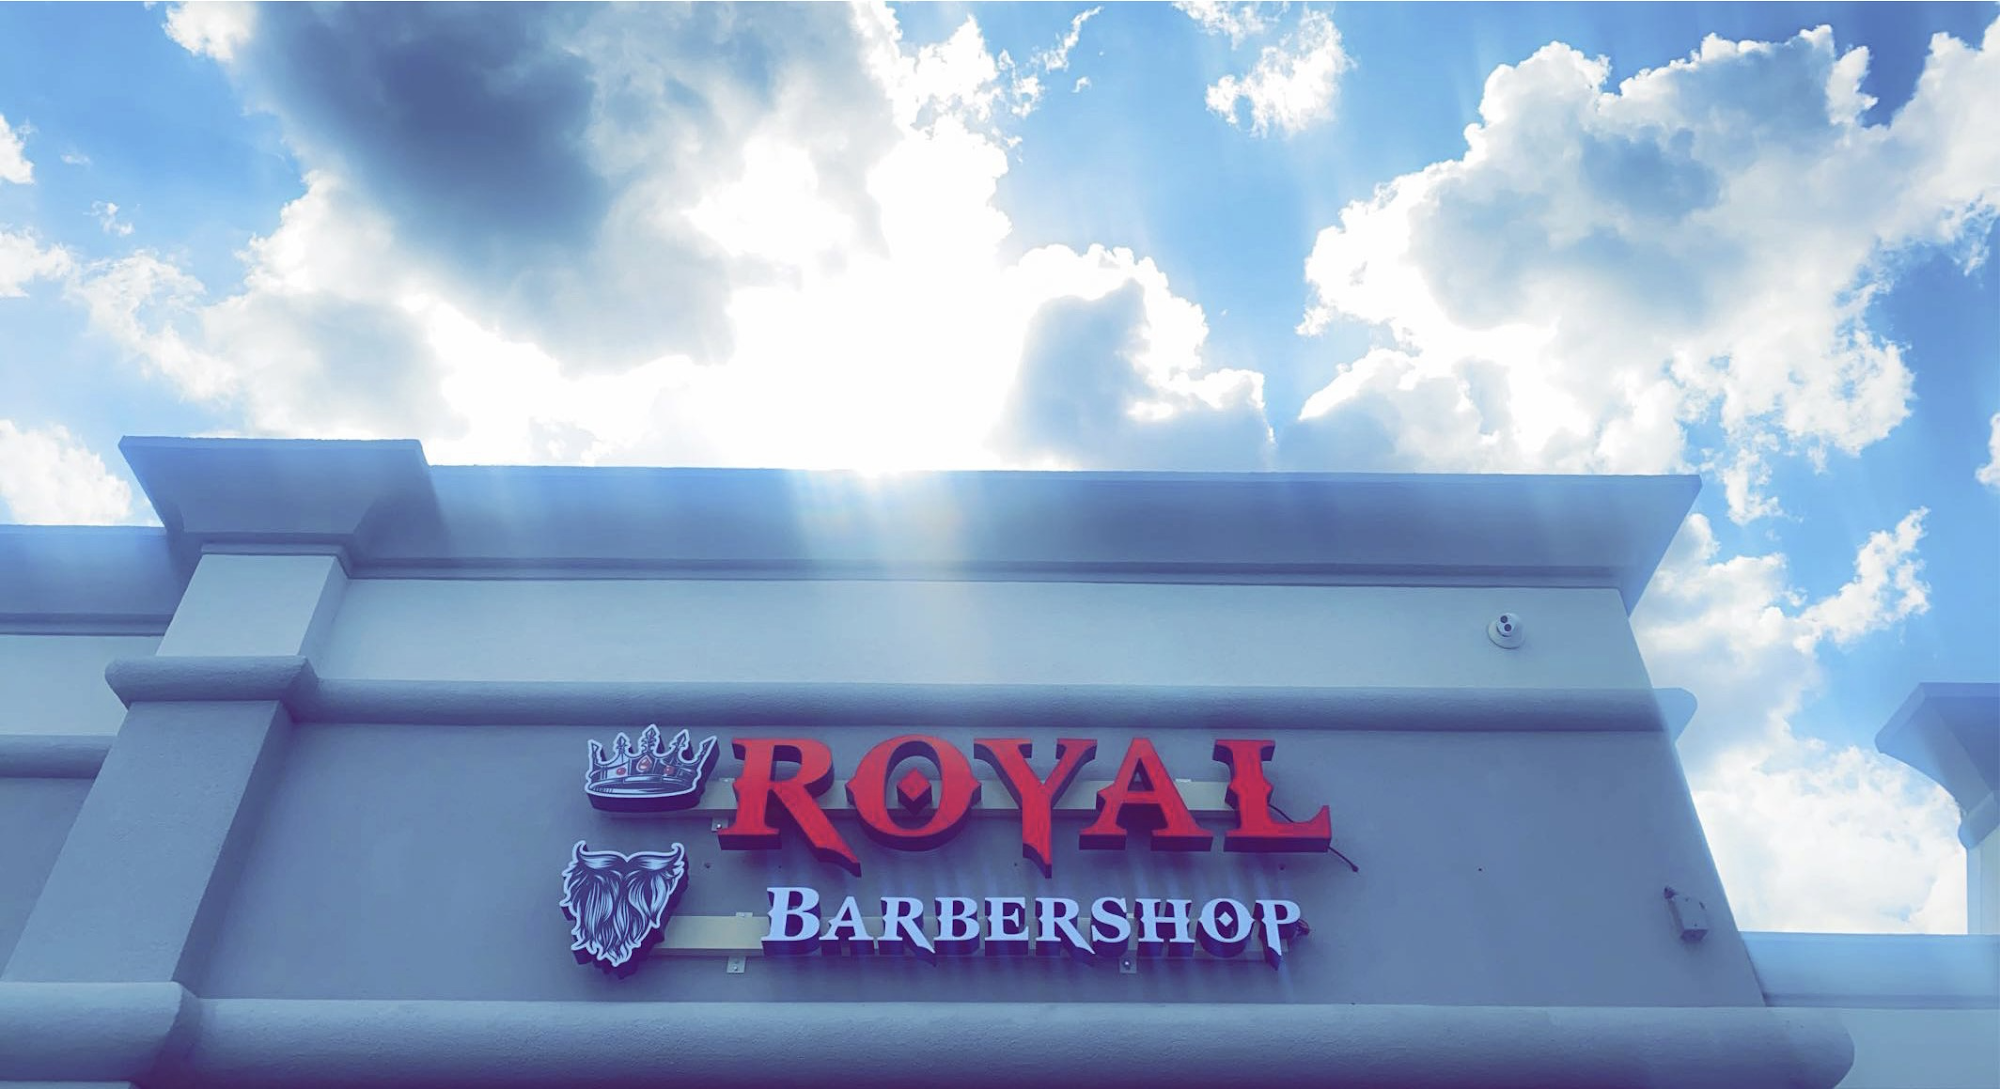 Royal BarberShop — RARITAN